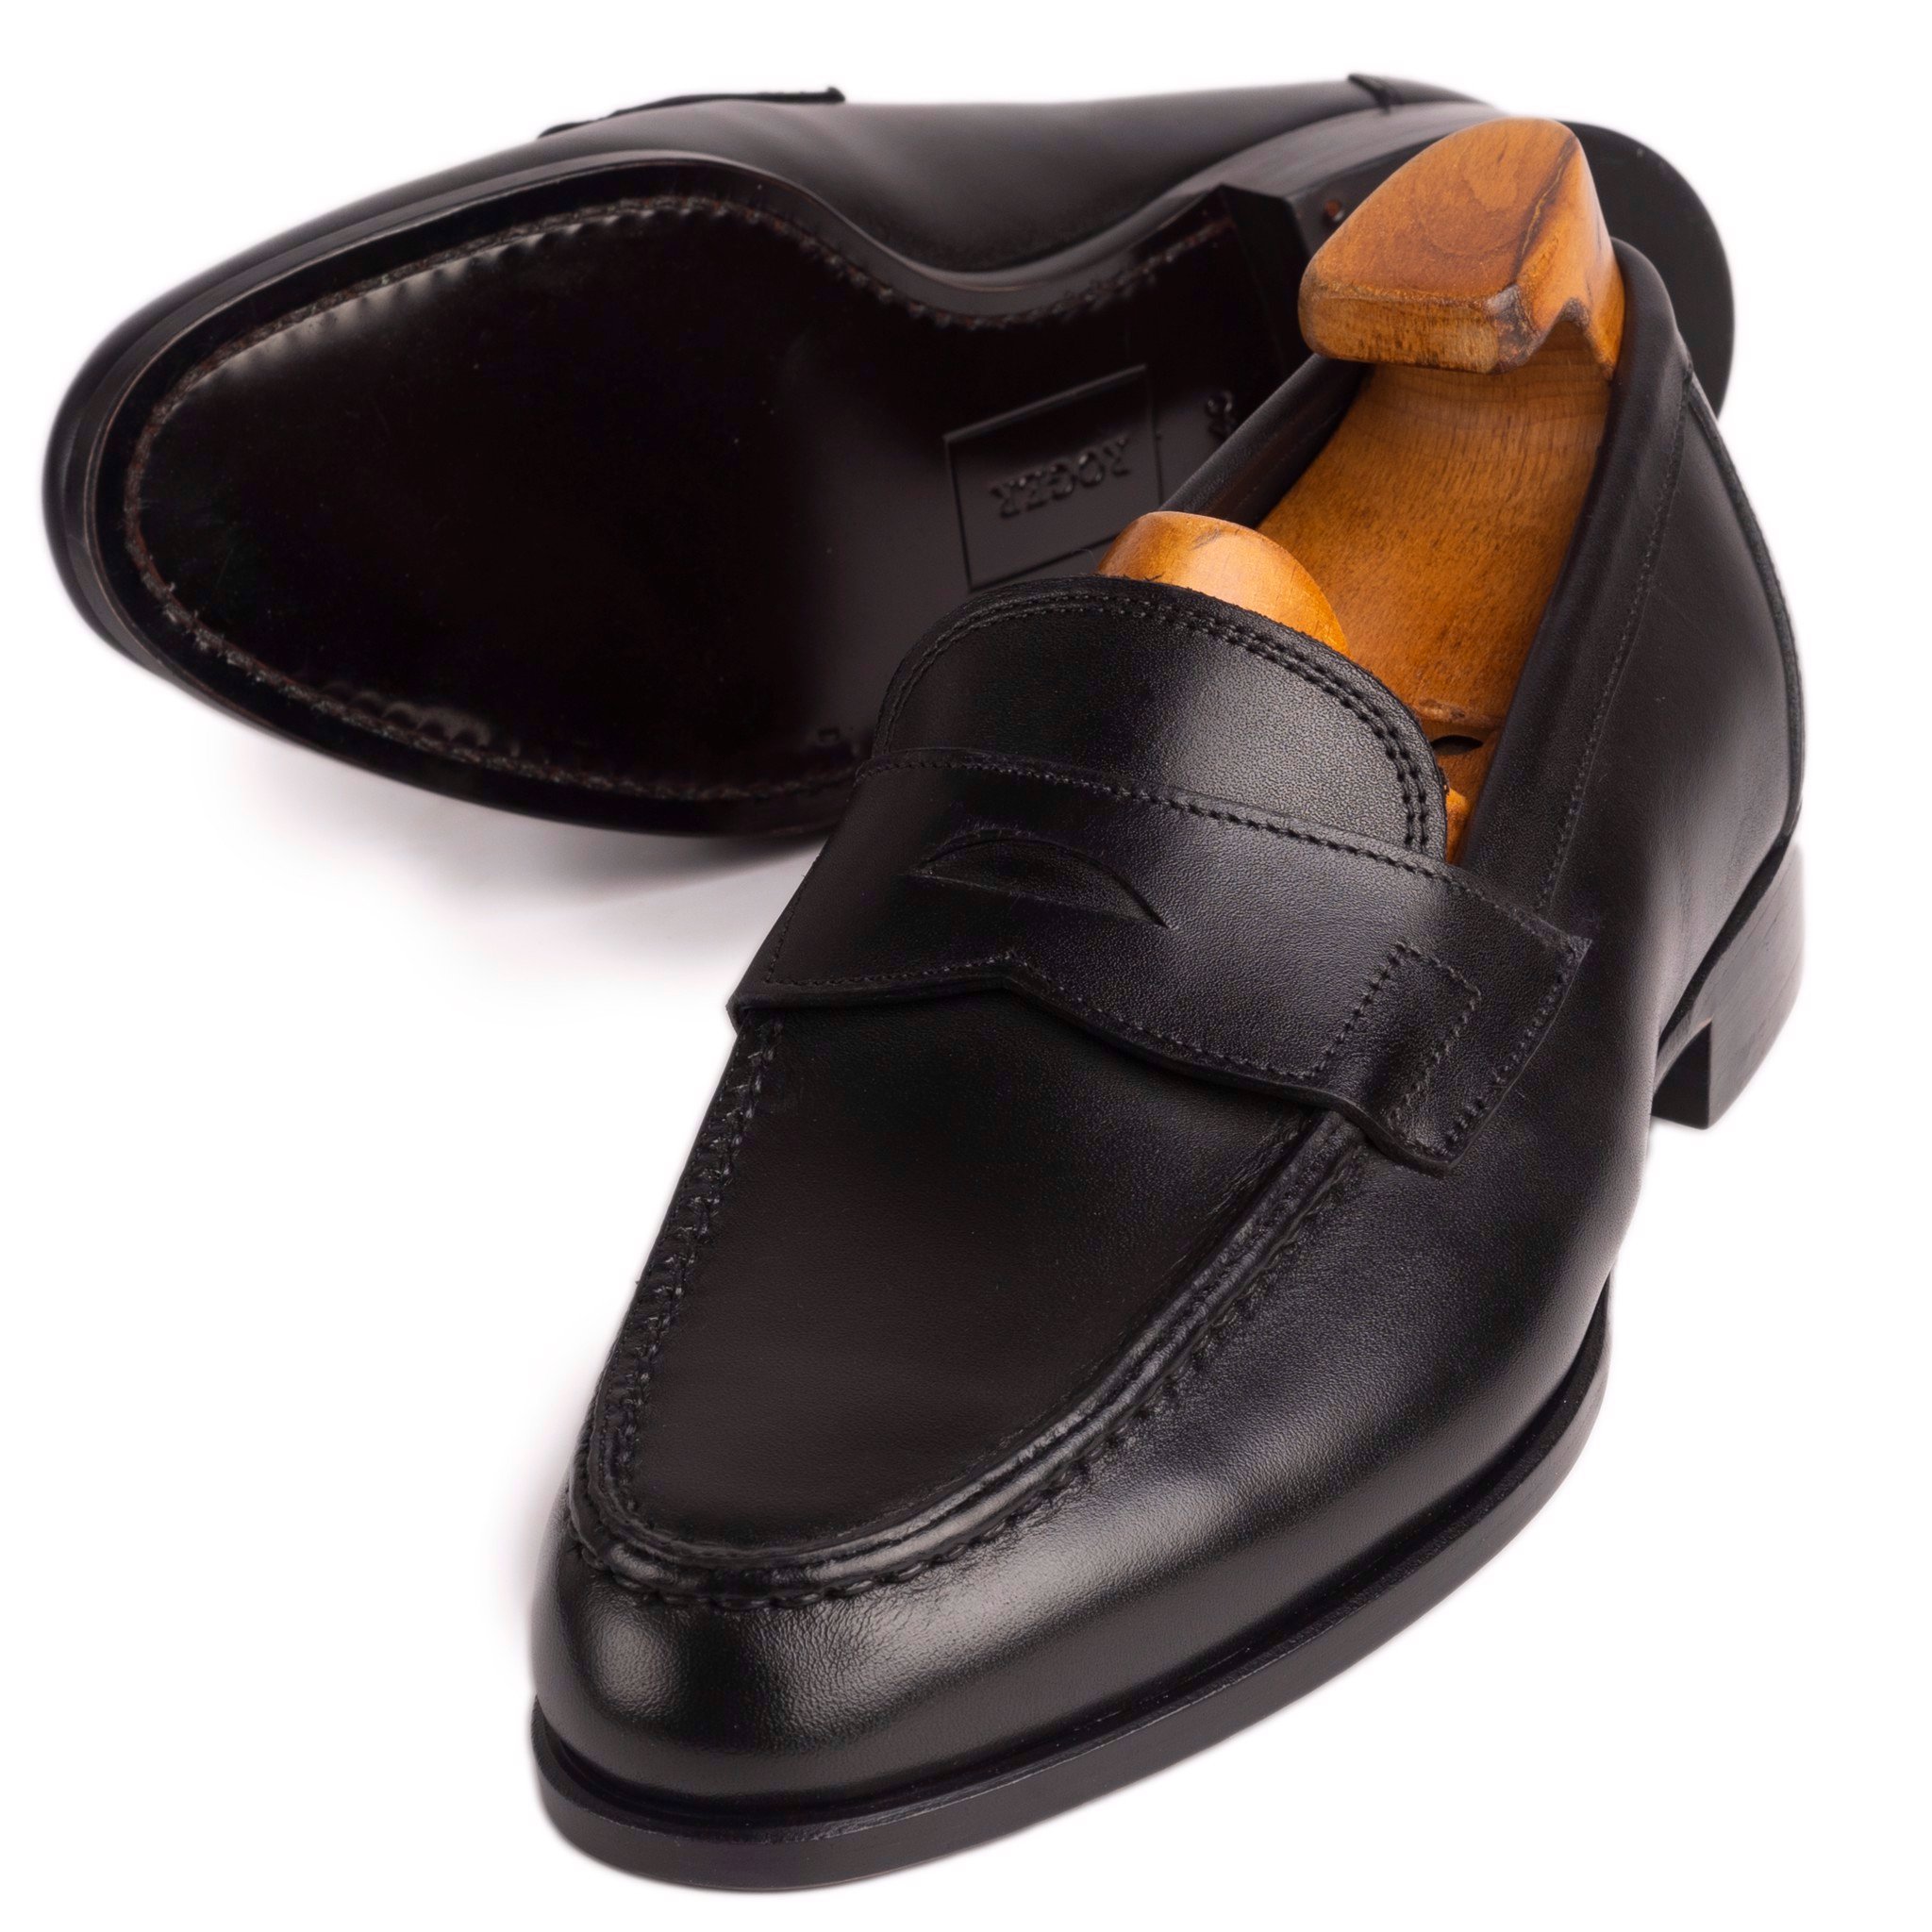 Nguồn gốc giày loafer